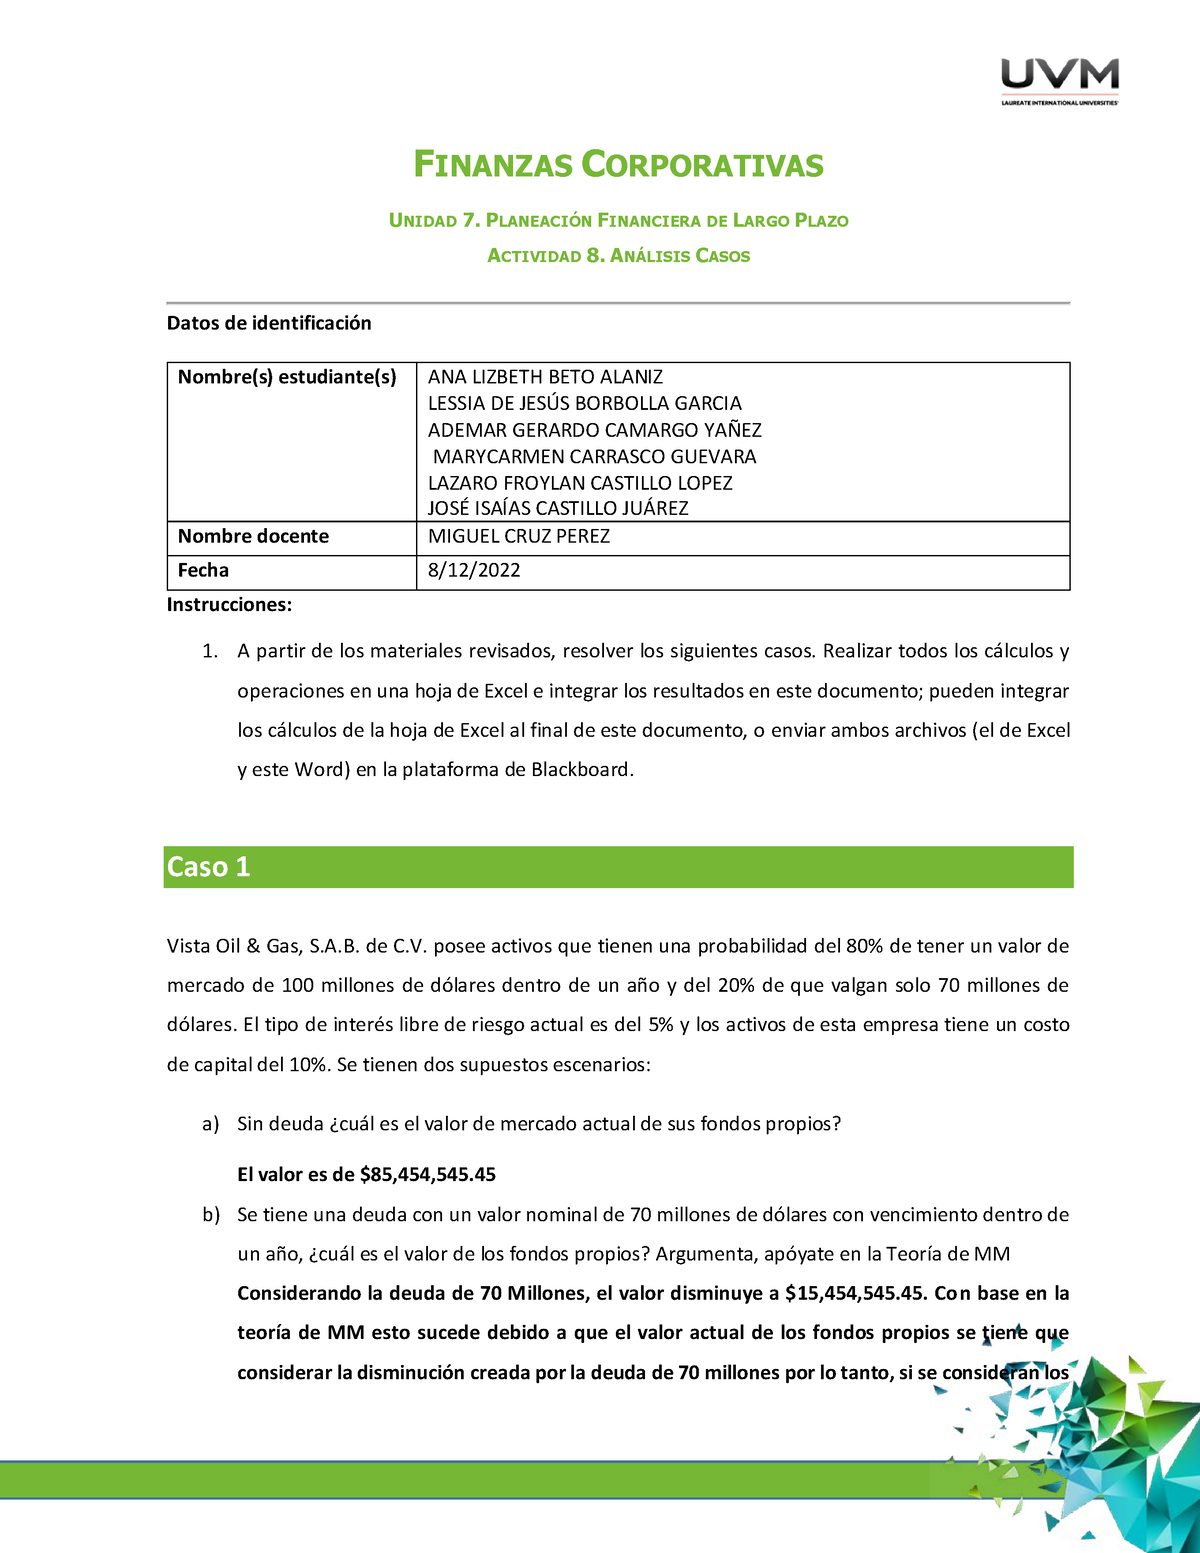 A8 Analisis De Caso Finanzas Corporativas Unidad 7 PlaneaciÓn Financiera De Largo Plazo 2129